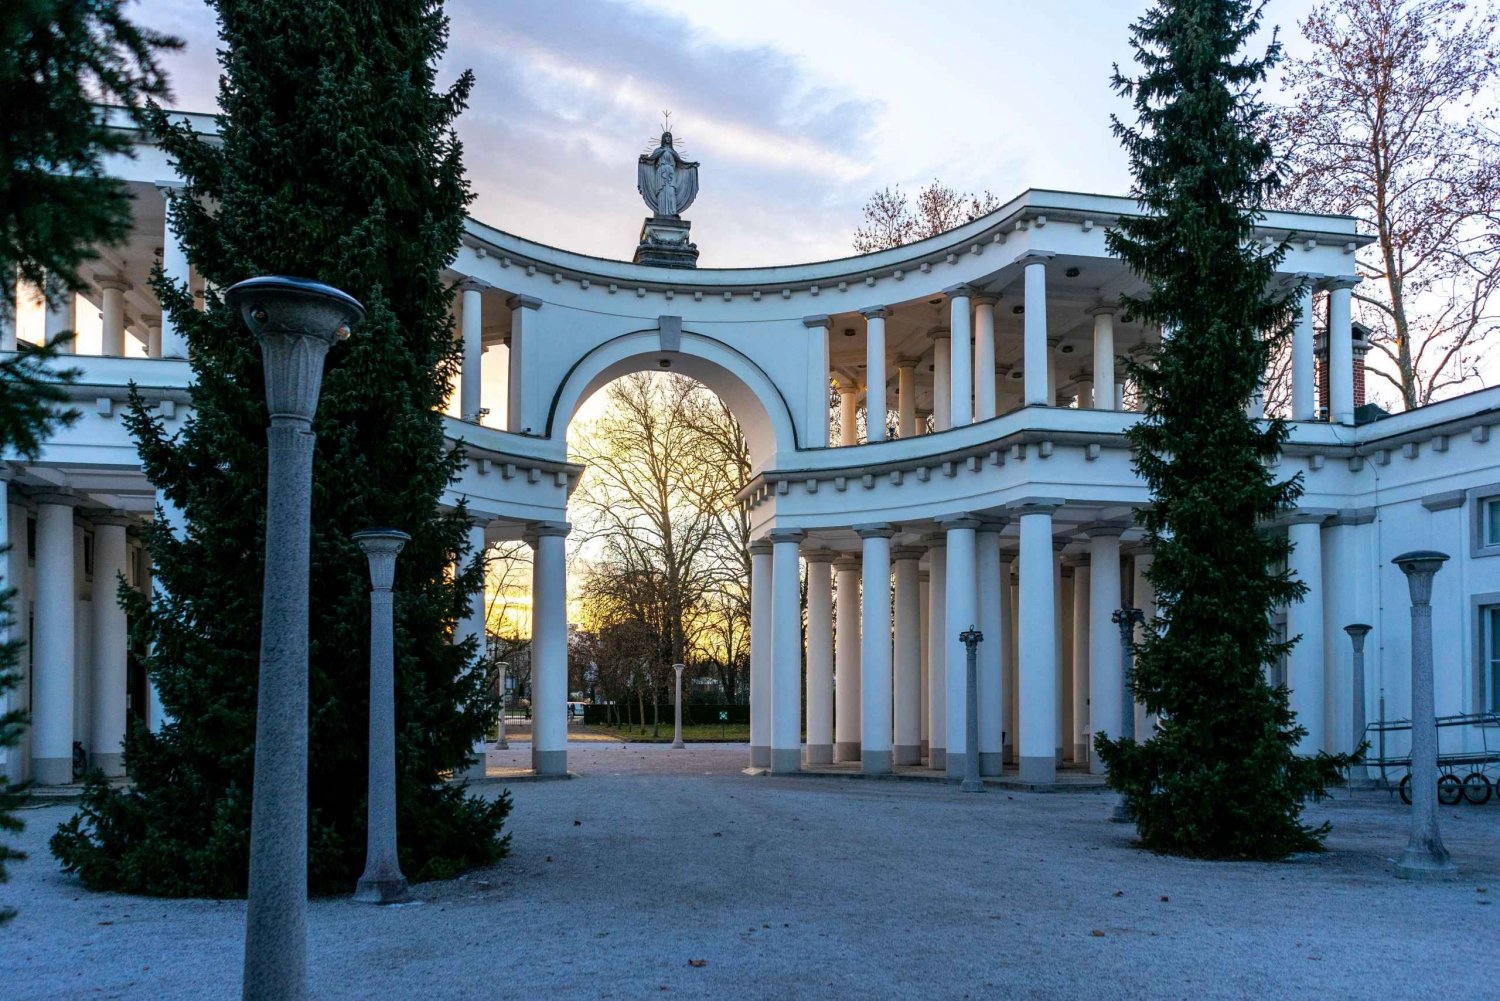 The Deadly Tour - Visite du cimetière de Ljubljana